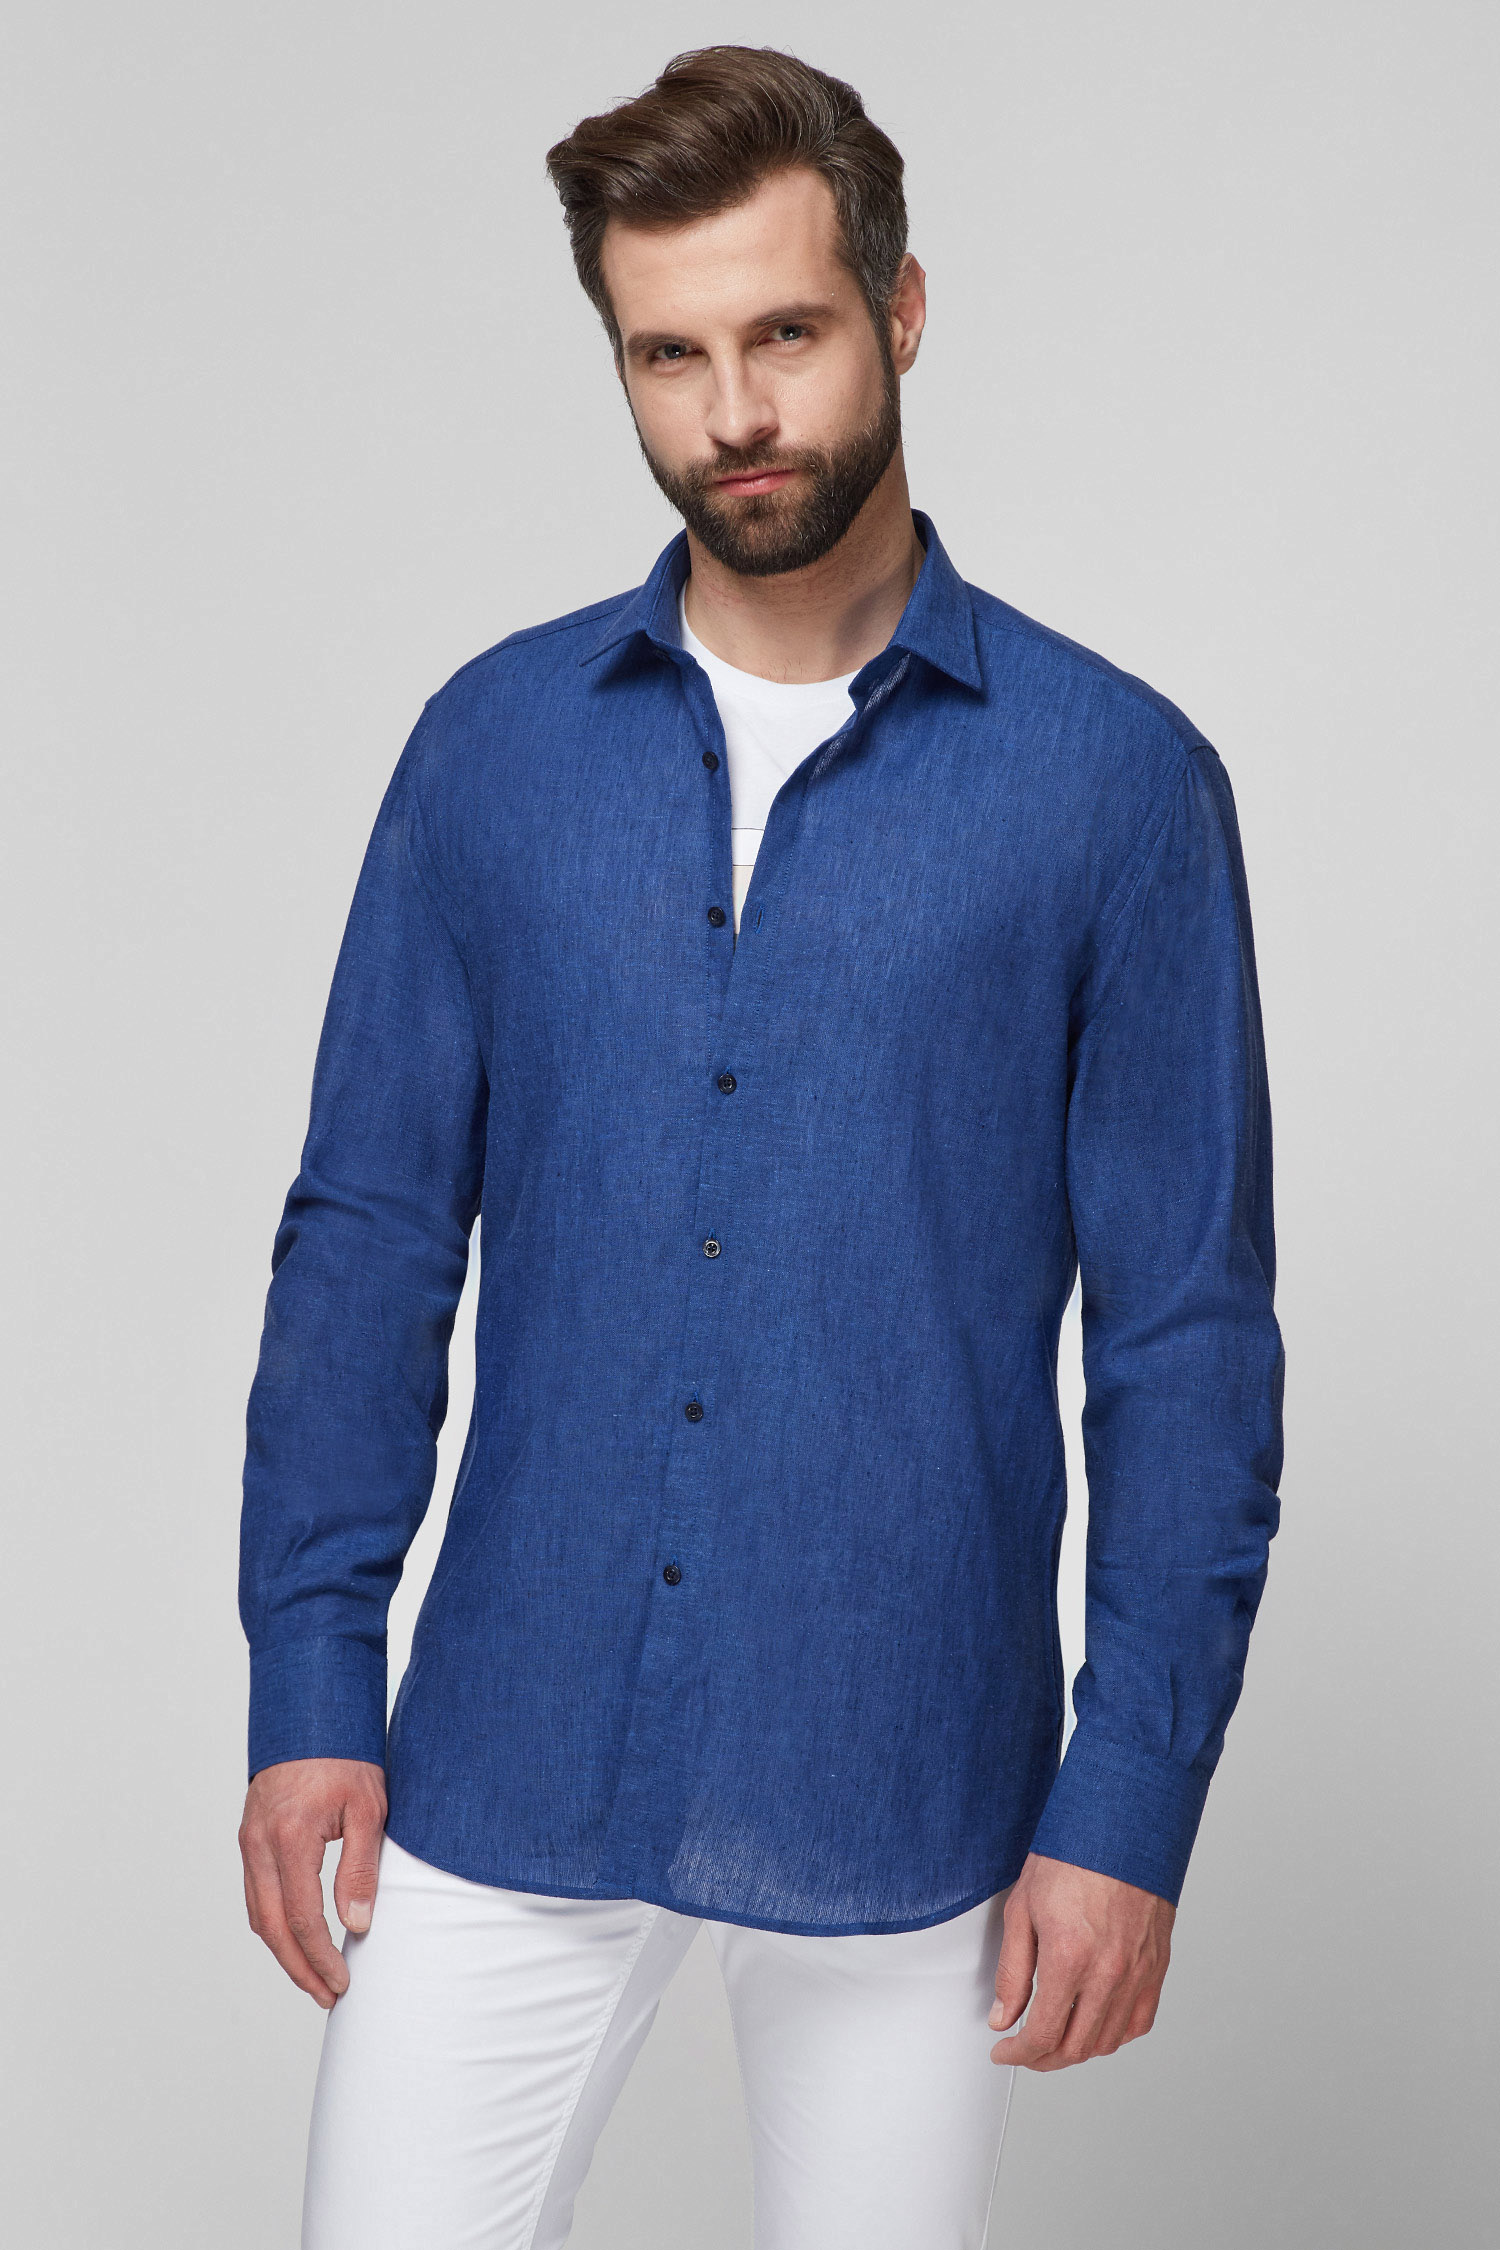 Чоловіча синя лляна сорочка Karl Lagerfeld 511628.605003;660